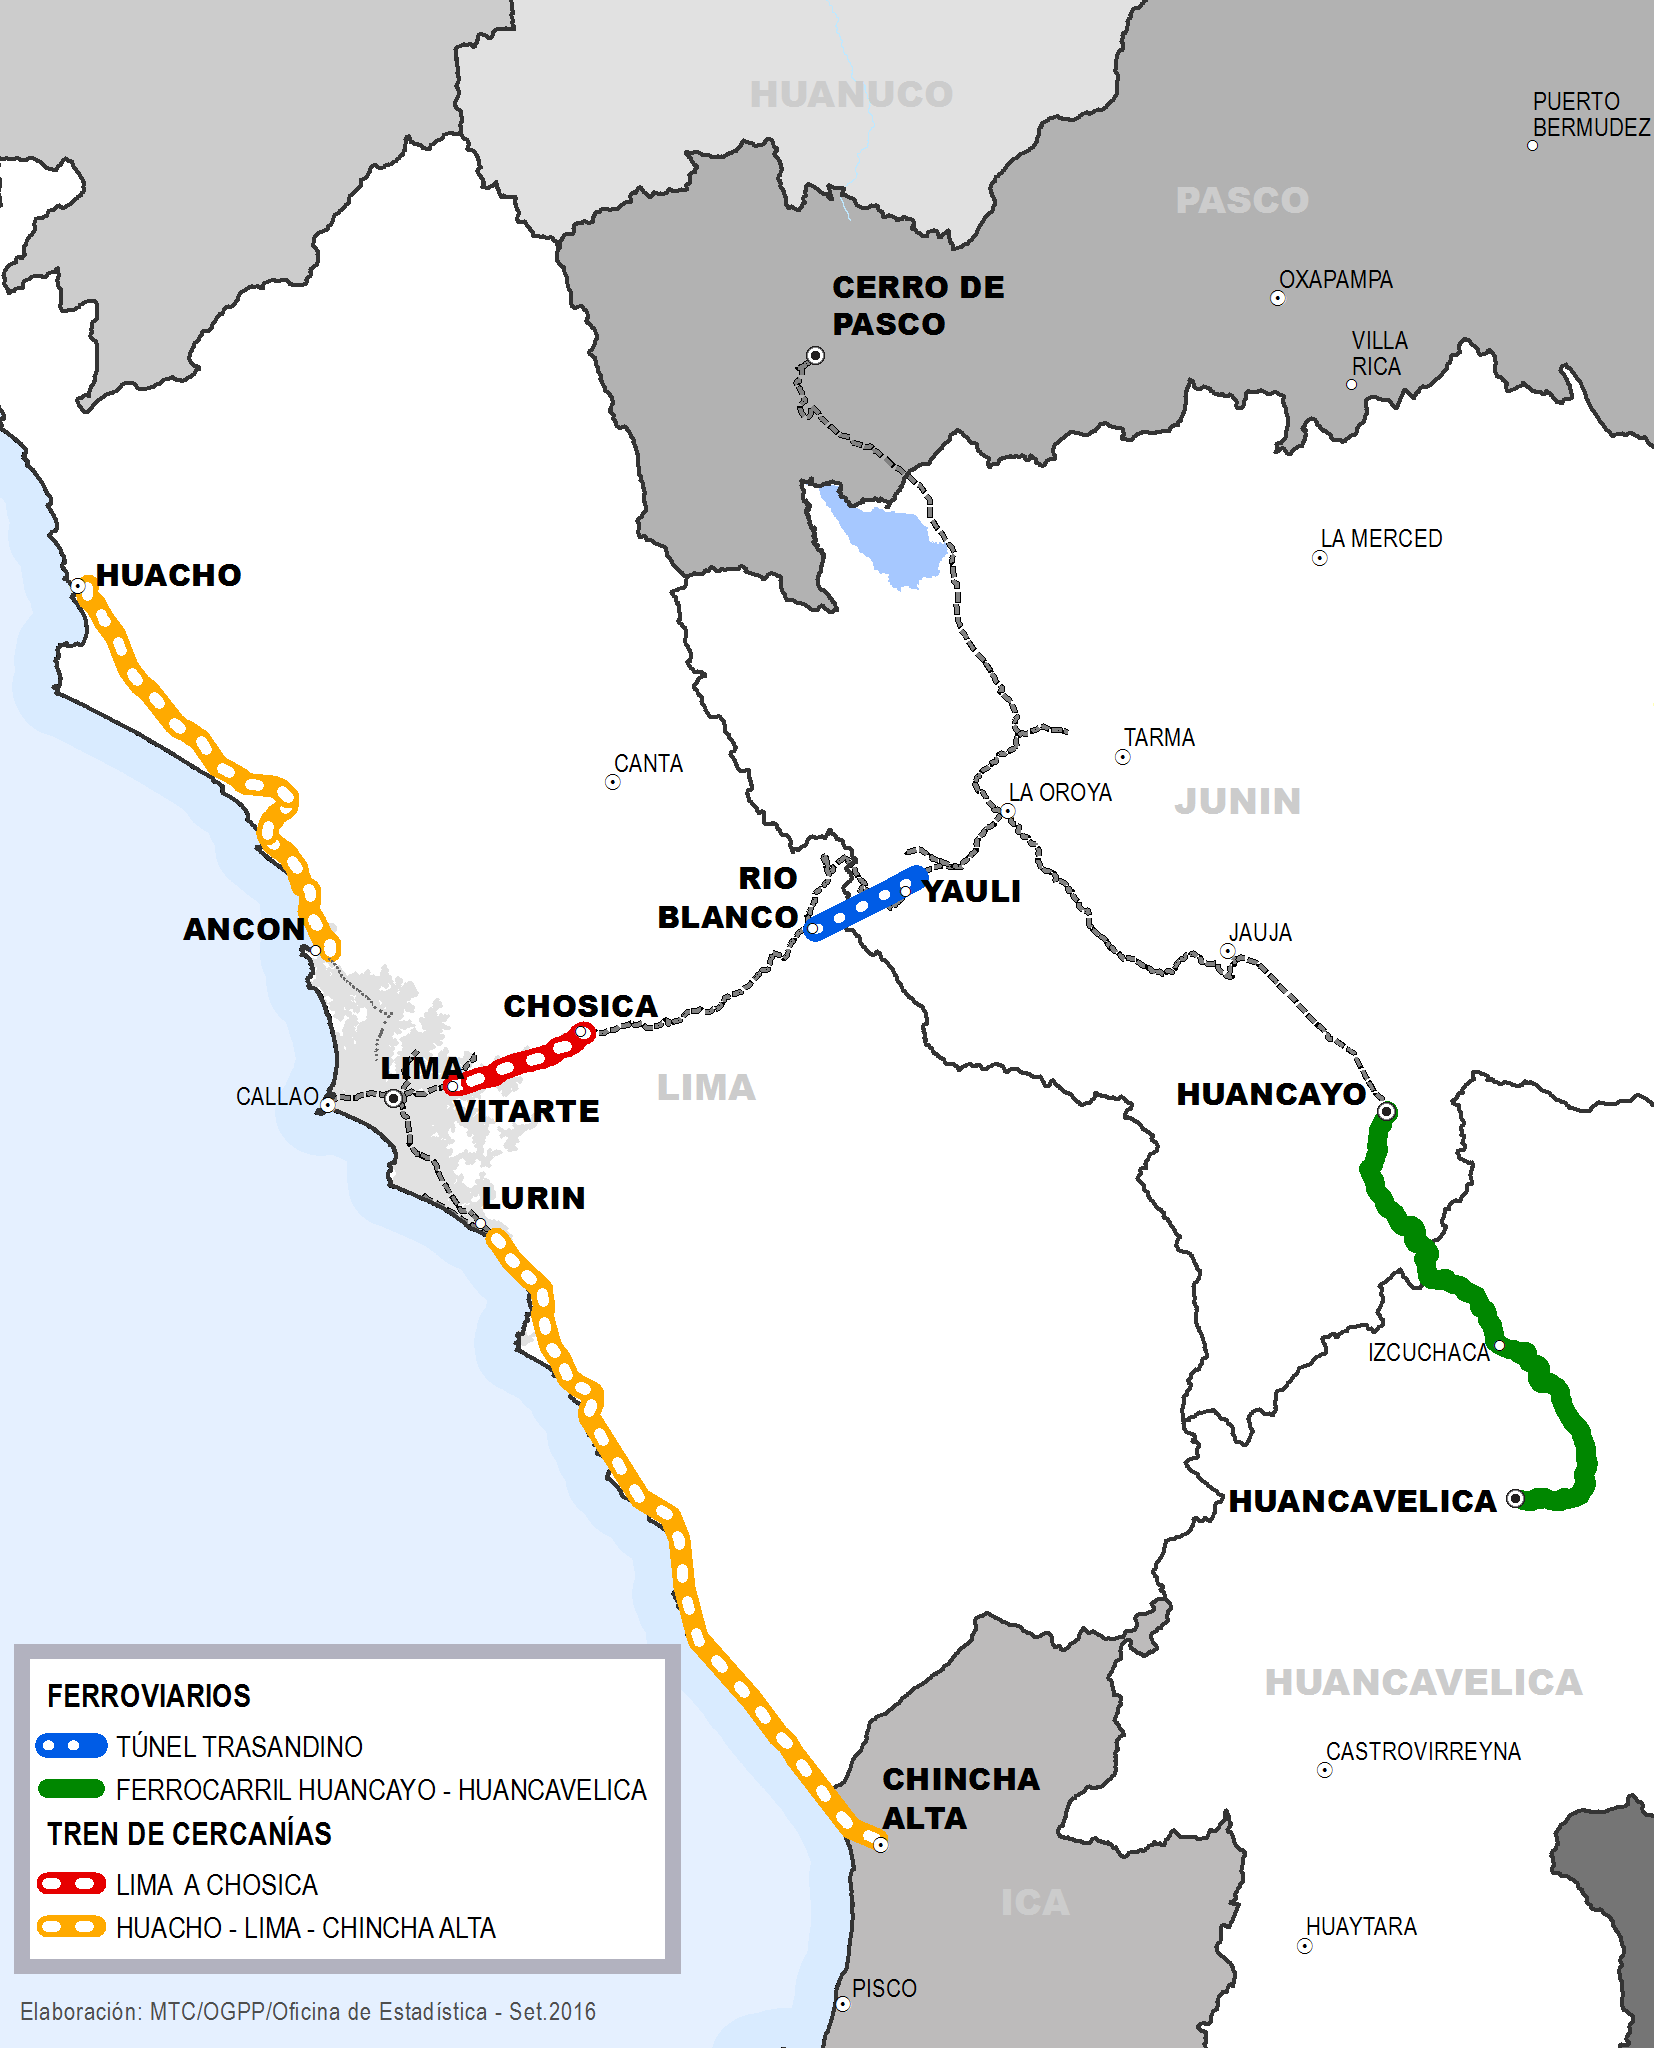 FERROVIARIO Trenes de Cercanías y Ferroviarios Meta al 2017: Tren de Cercanías de Lima Este (Lima Chosica) - Estudio de Perfil Tren de Cercanías de Lima Norte y Sur (Huacho - Lima